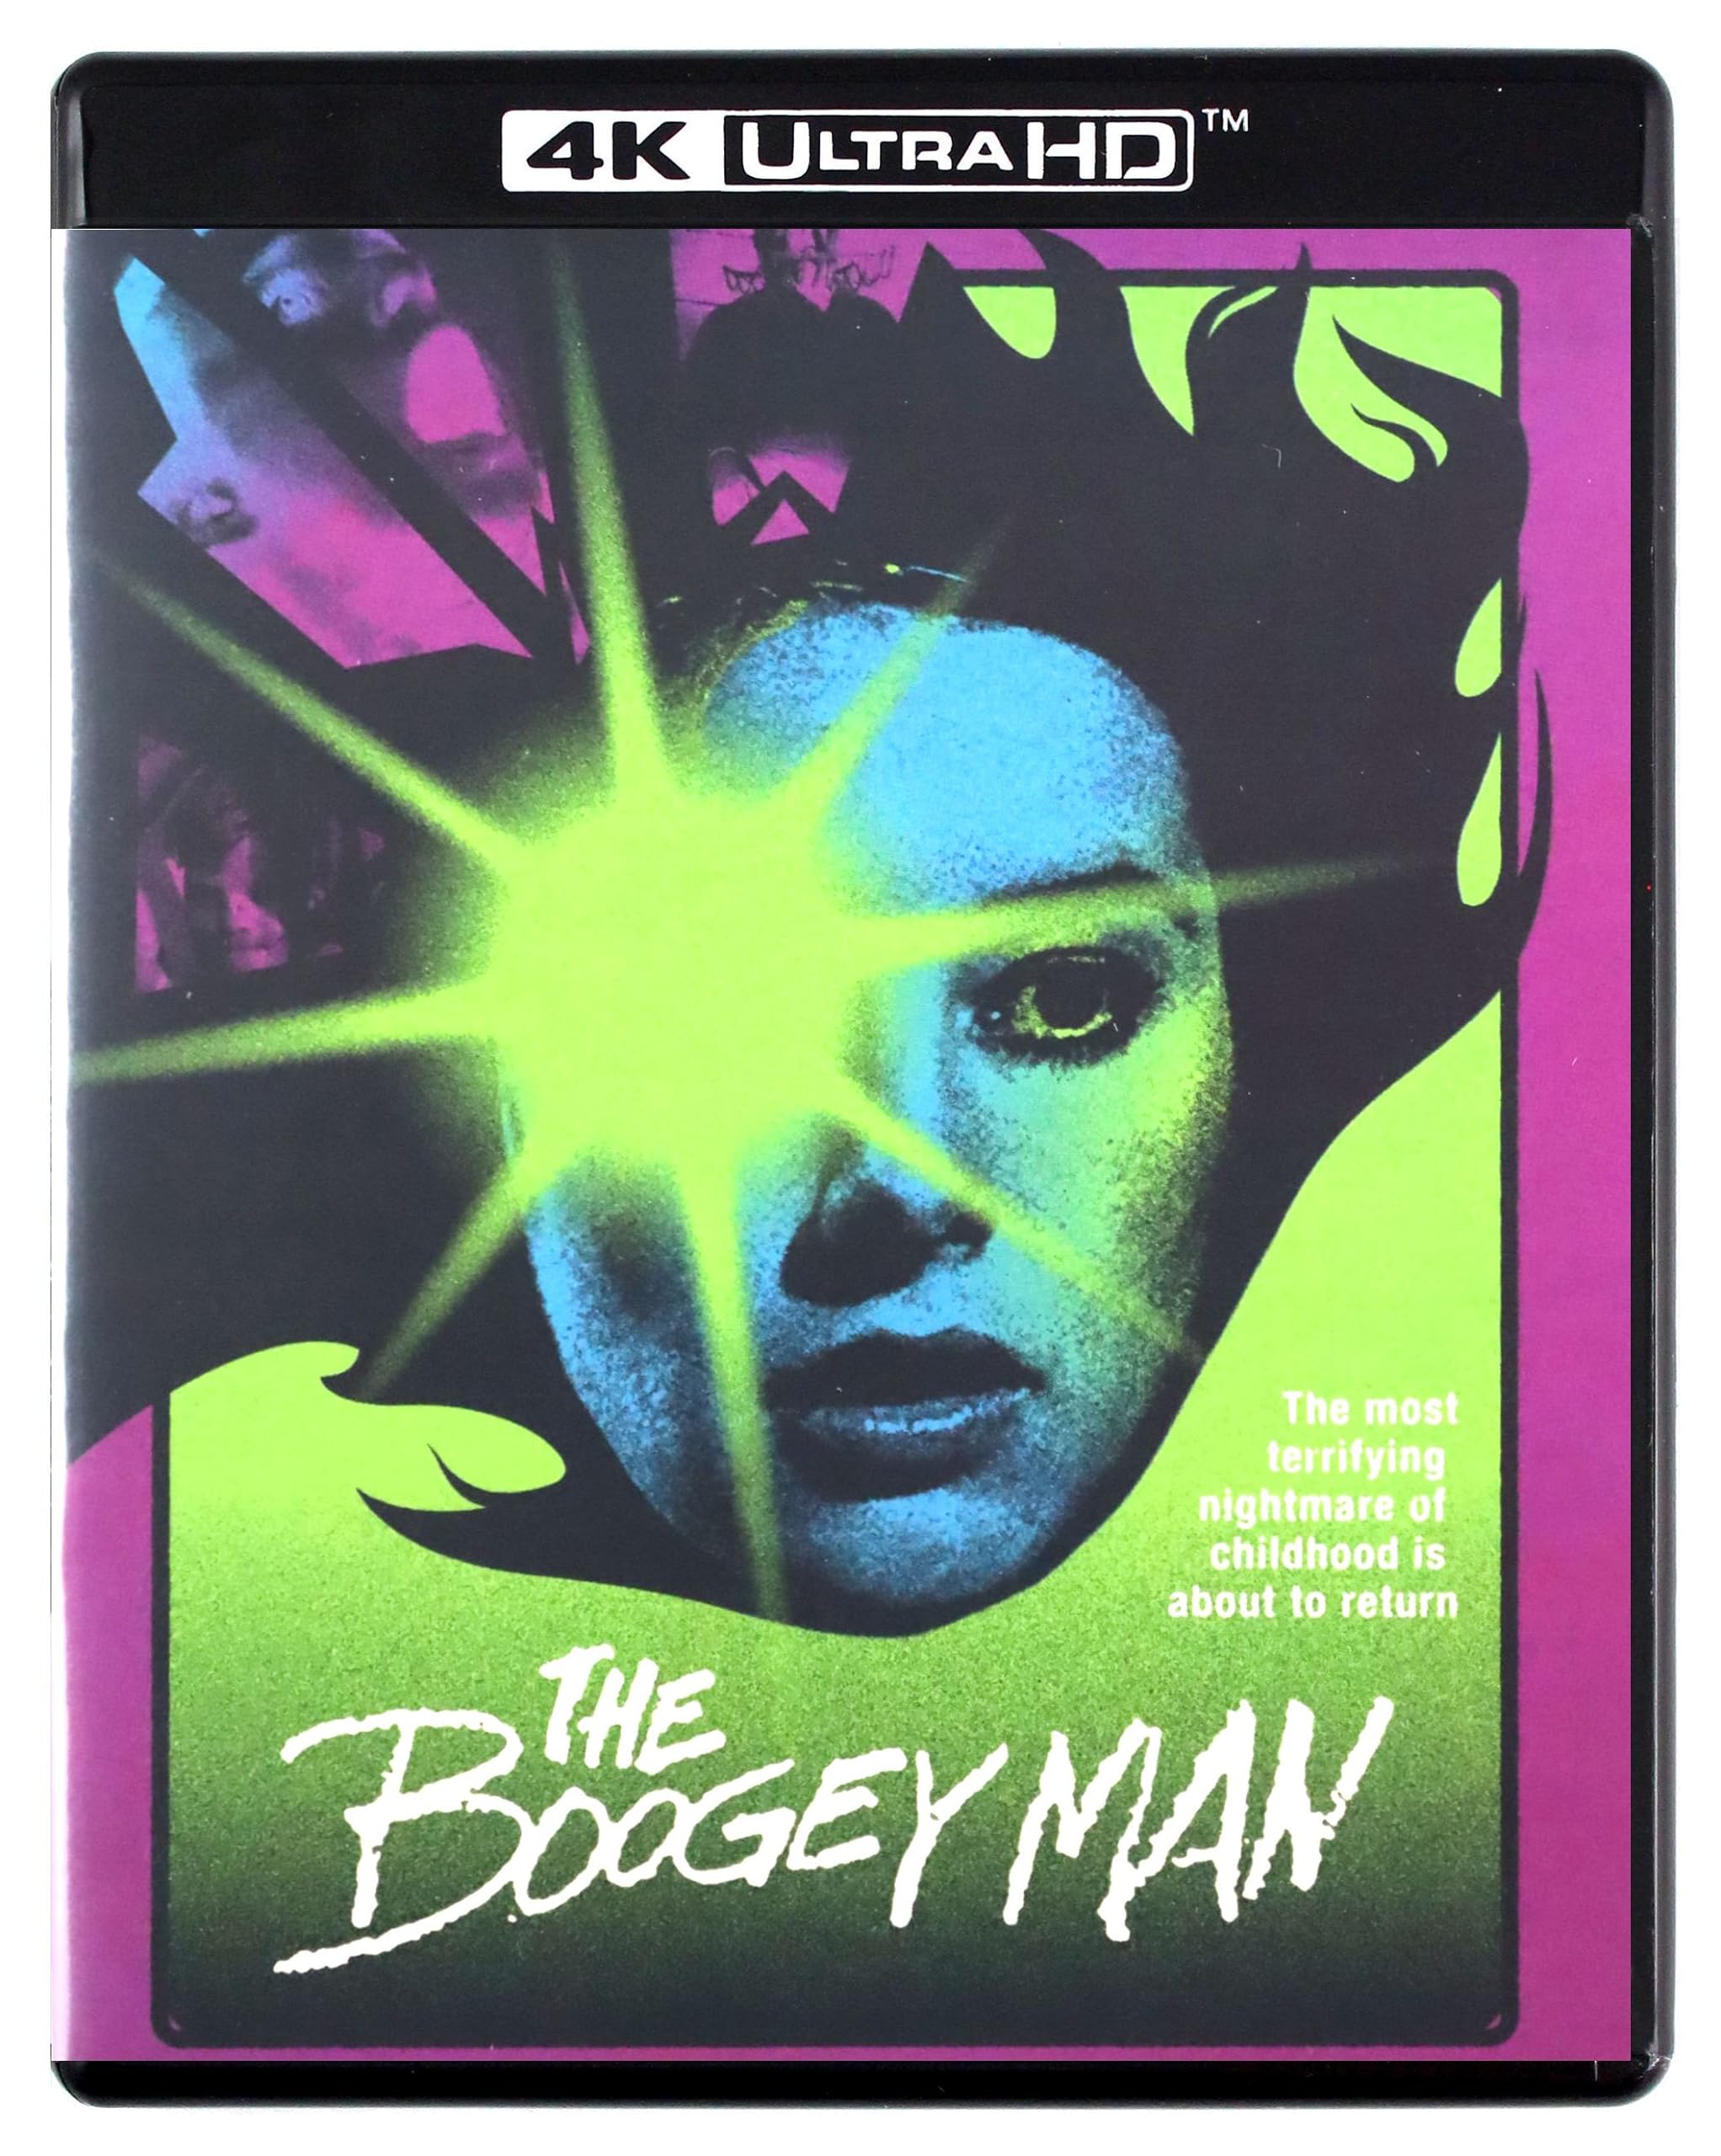 Boogeyman, The (4K-UHD) on MovieShack